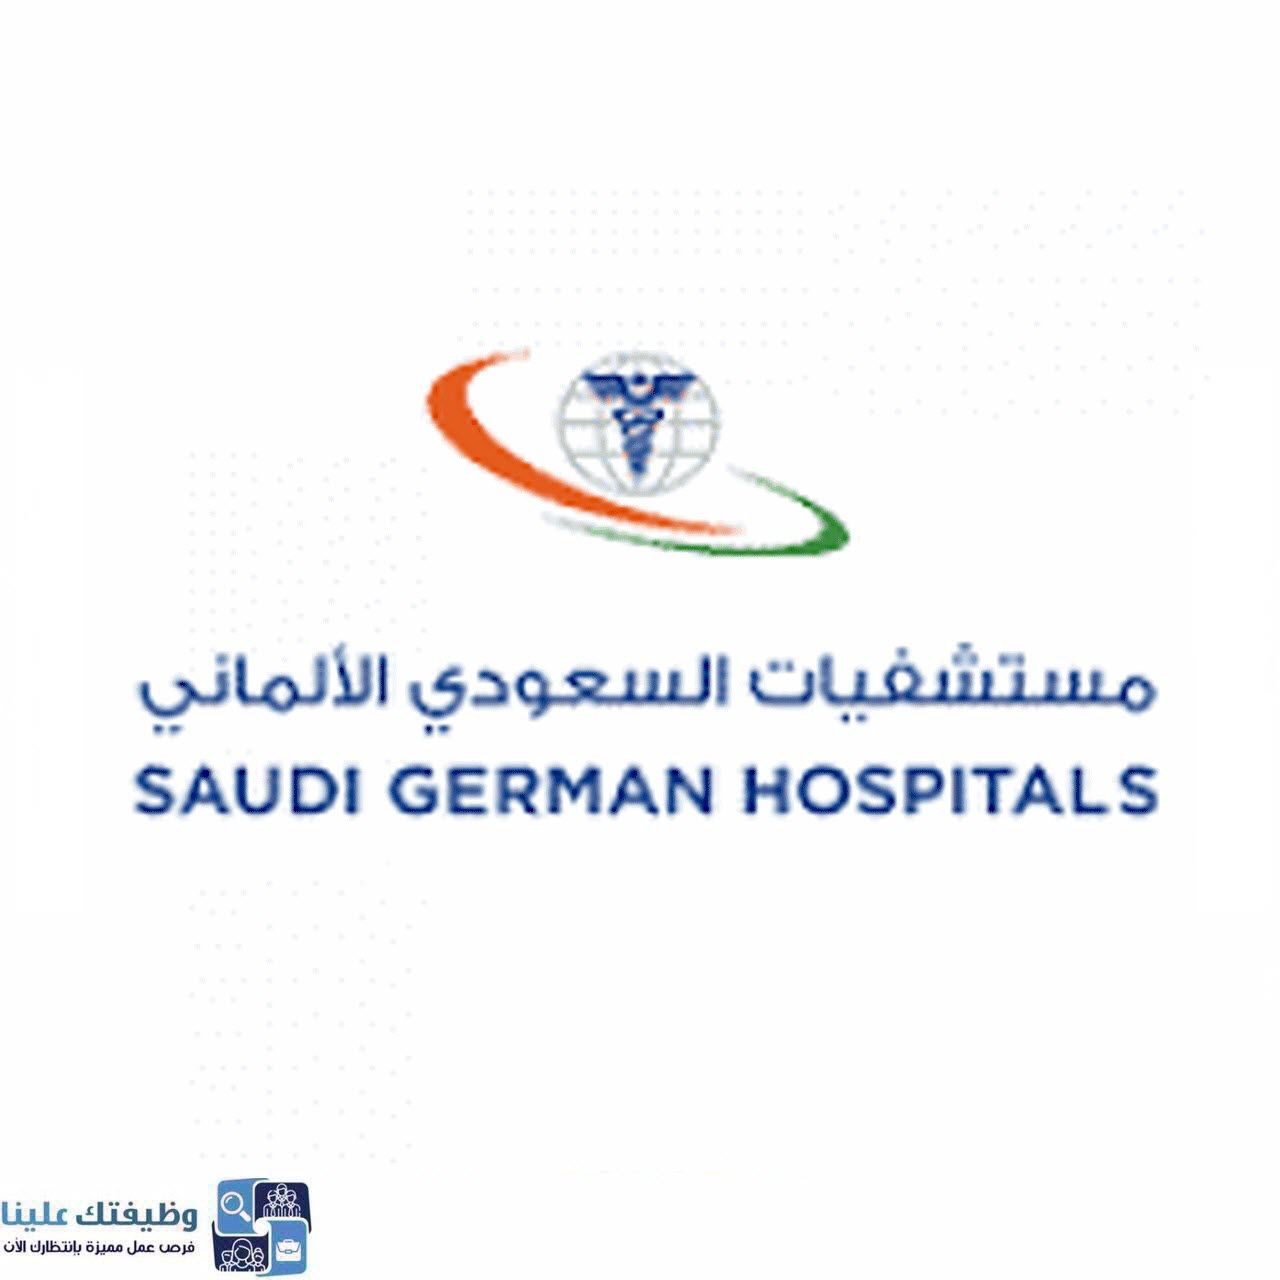 مجموعة مستشفيات السعودي الالماني وظائف